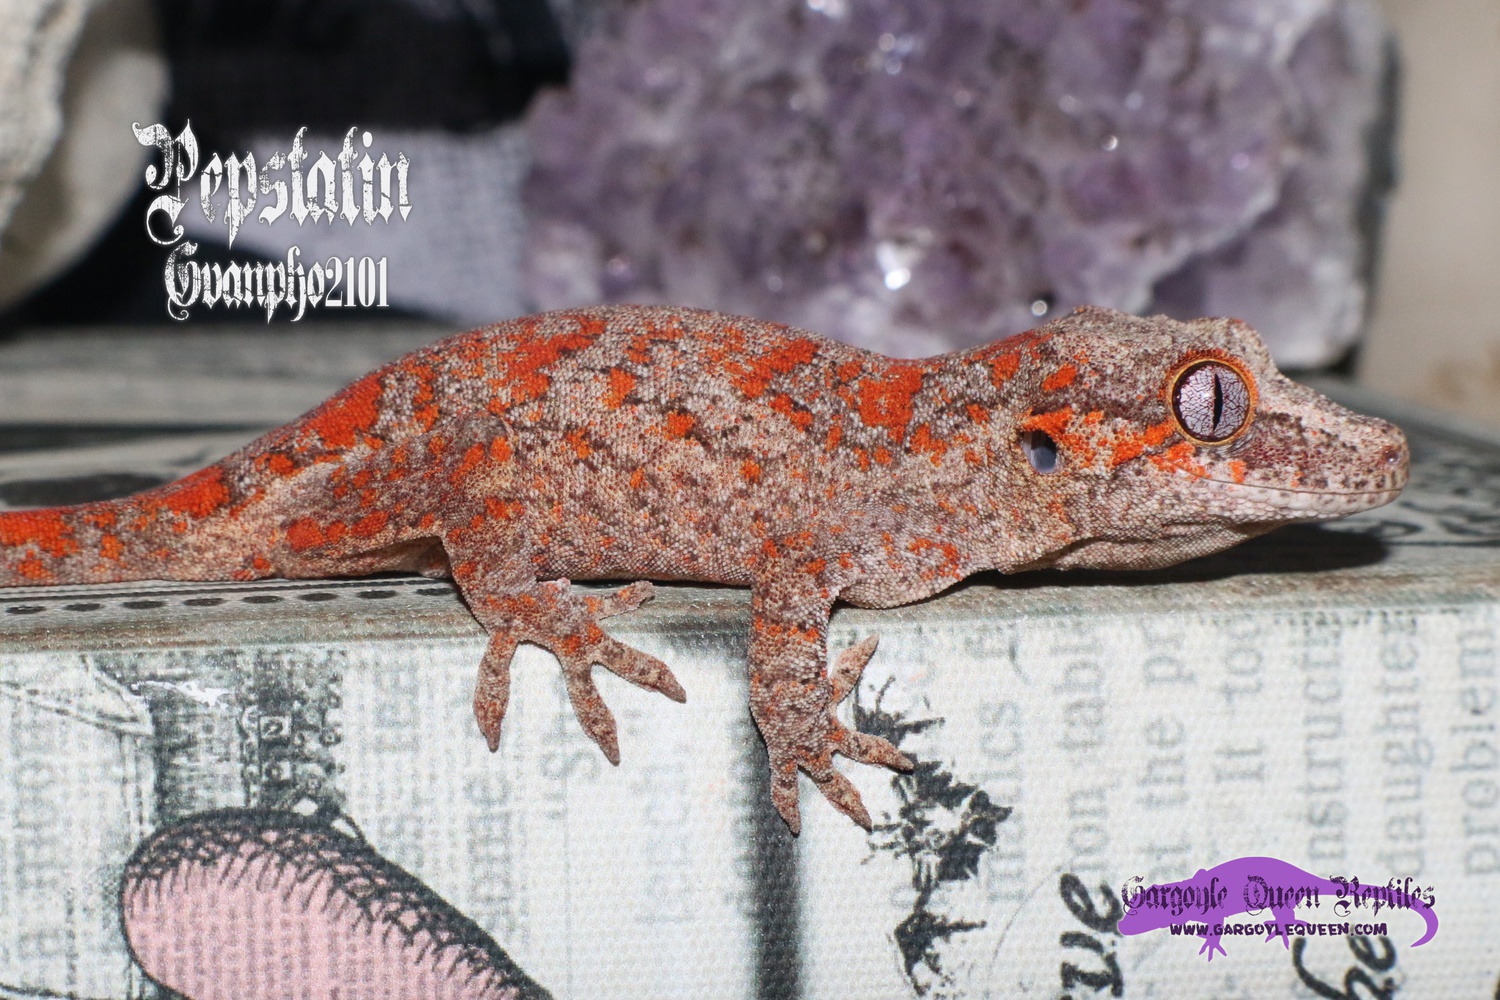 "B-Pepstatin" Red Super Blotch Gargoyle Gecko by Gargoyle Queen Reptiles